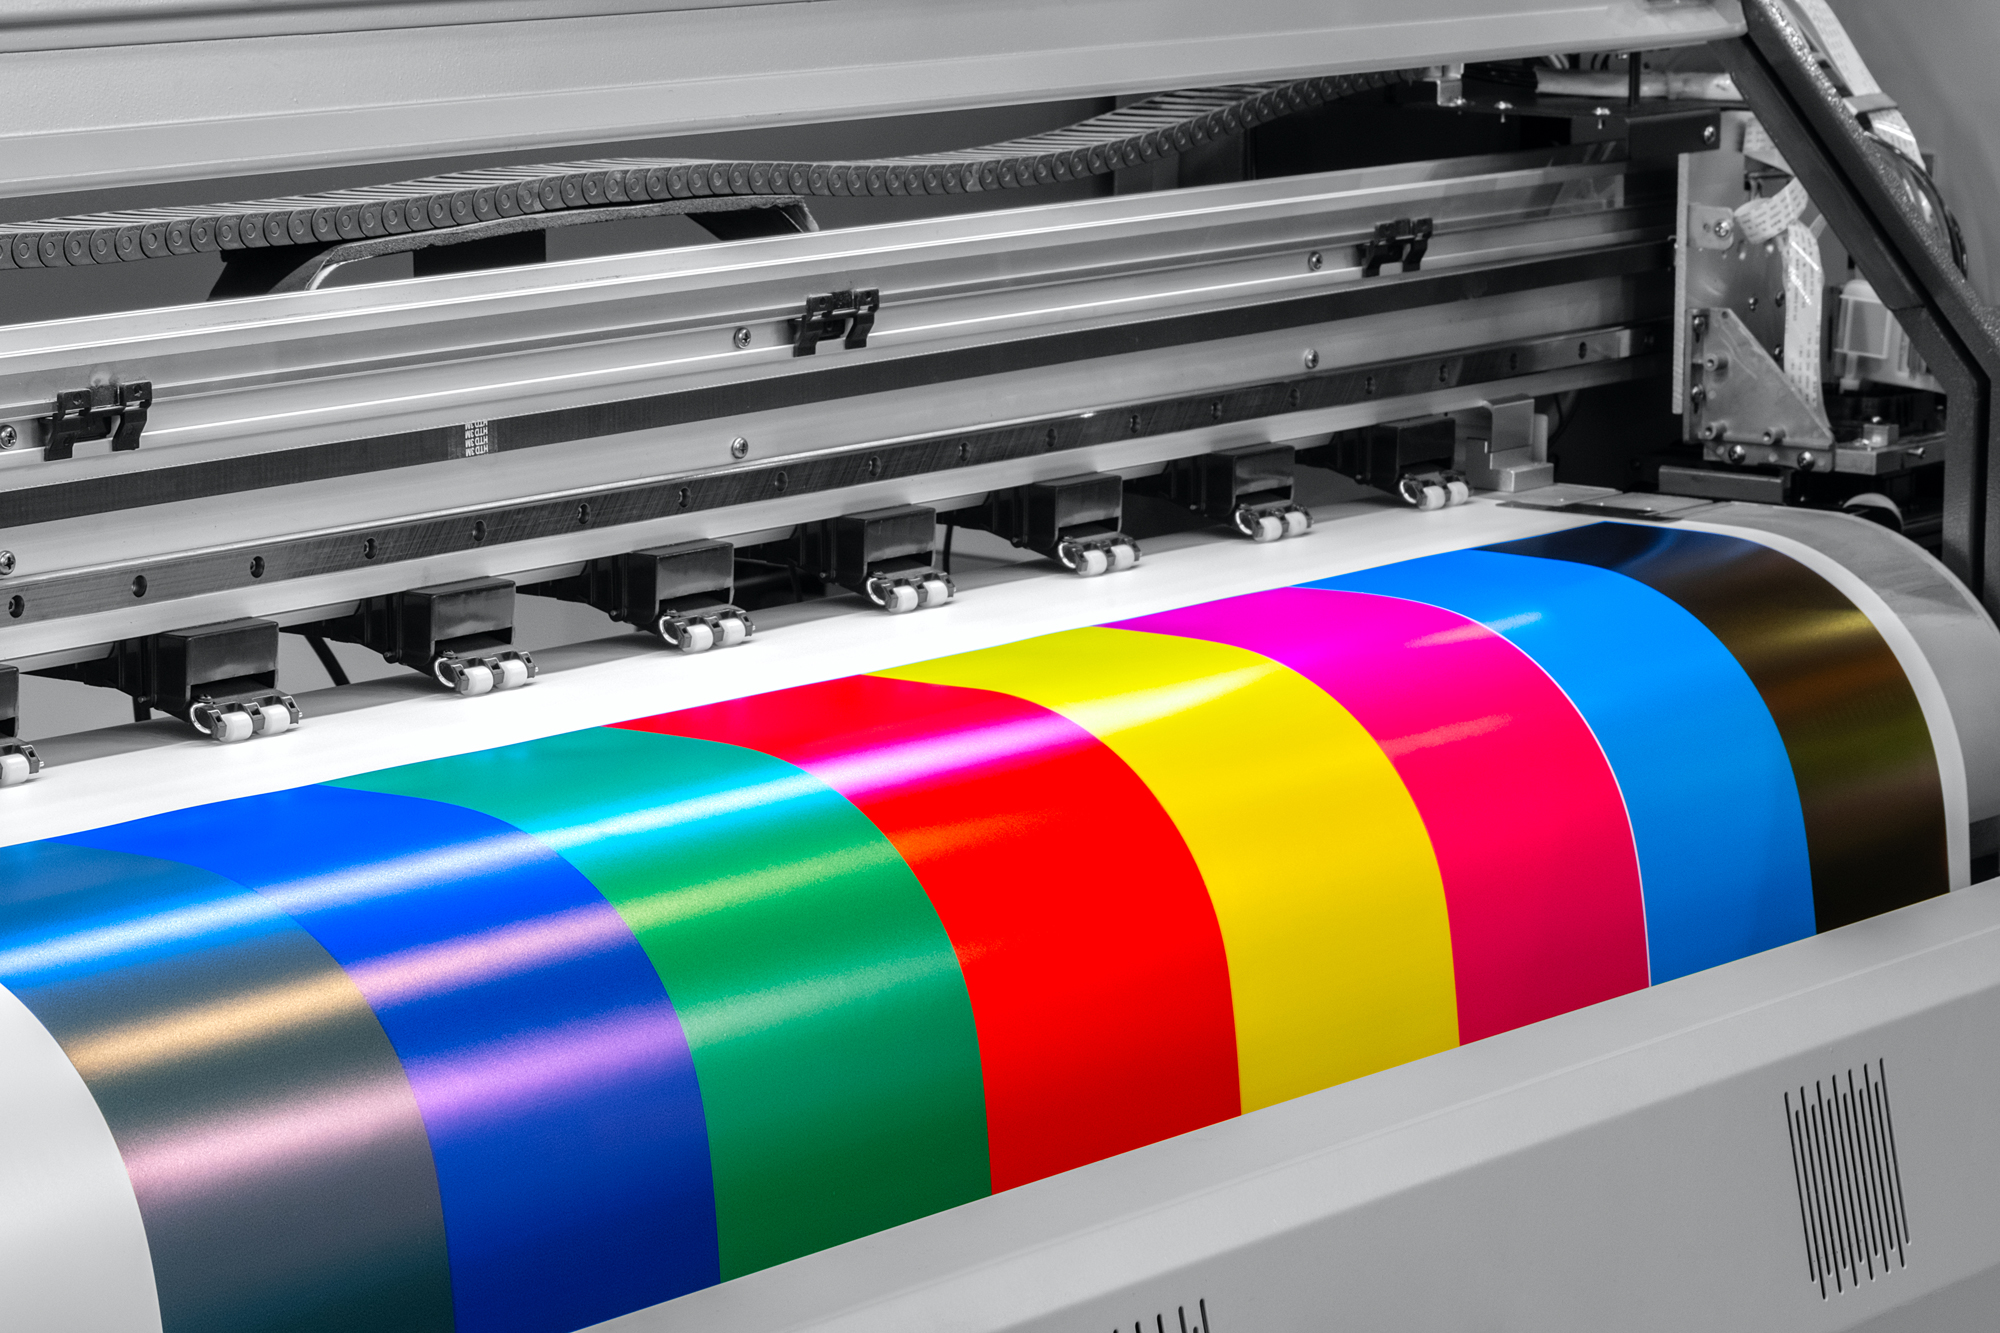 impresora inyeccion tinta gran formato imprime franjas color calcocris